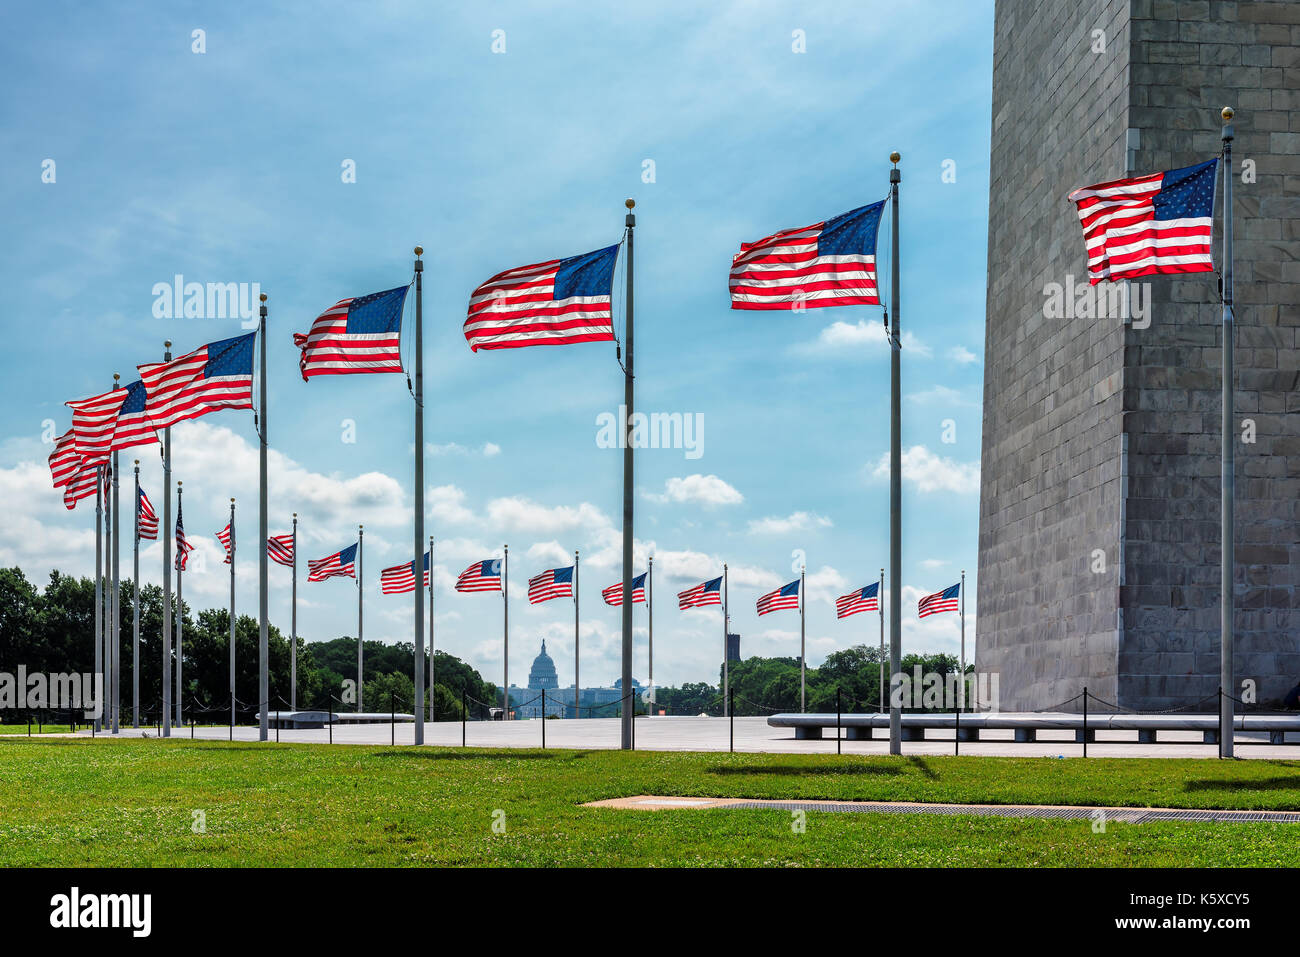 Amerikanische Flaggen in der Nähe von Washington Monument und dem Kapitol Gebäude im Hintergrund, Washington DC, USA. Stockfoto